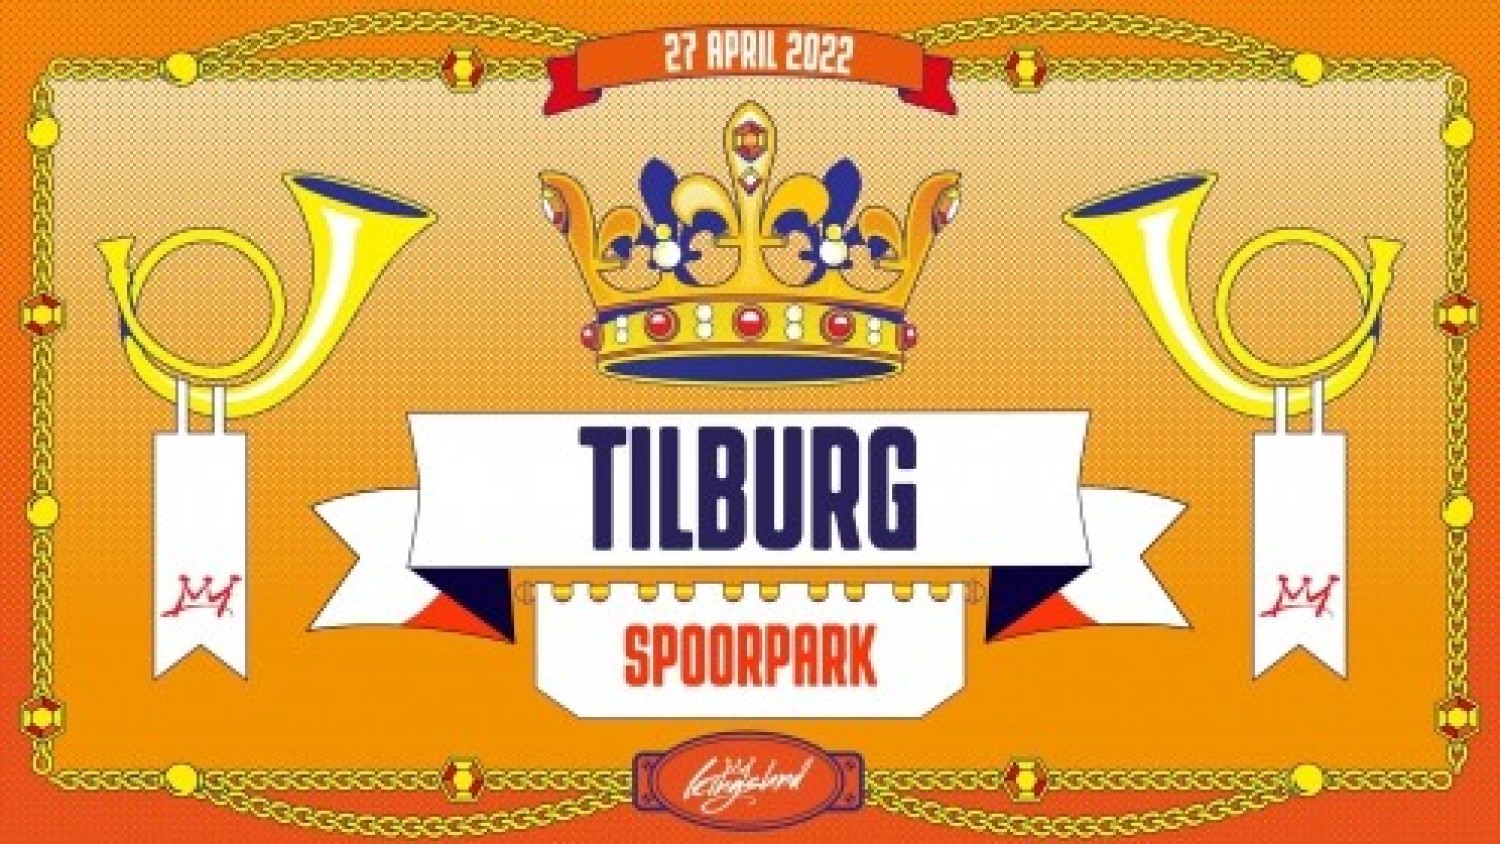 Kingsland Festival Tilburg